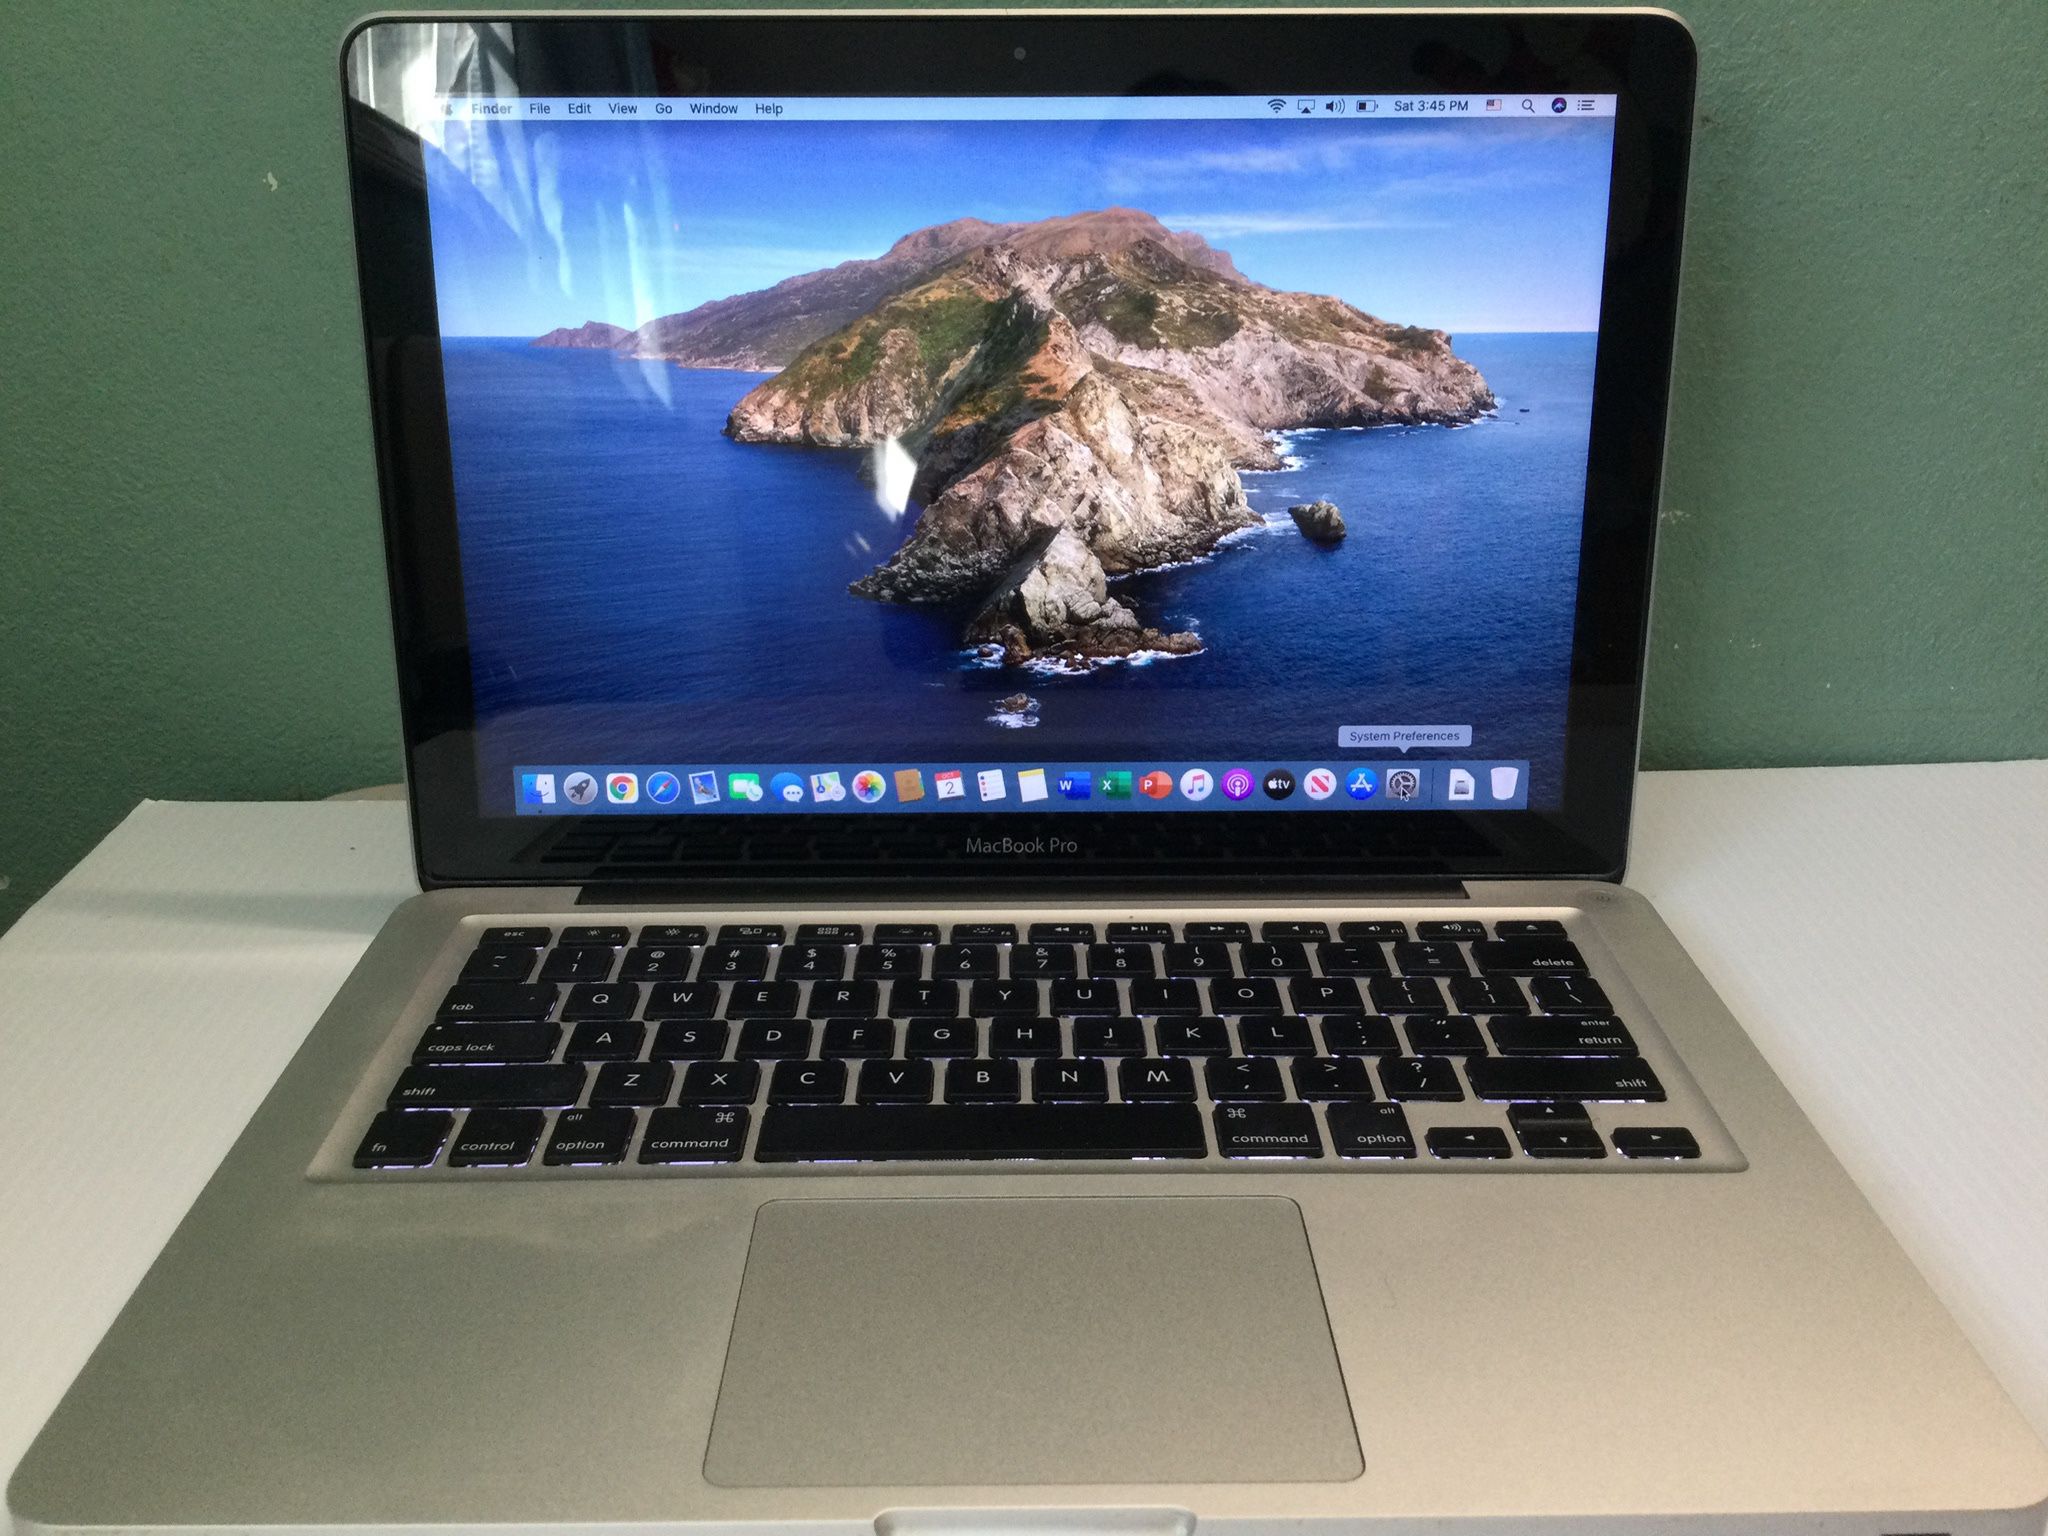 Macbook Pro 13" - Mac OS Catalina 